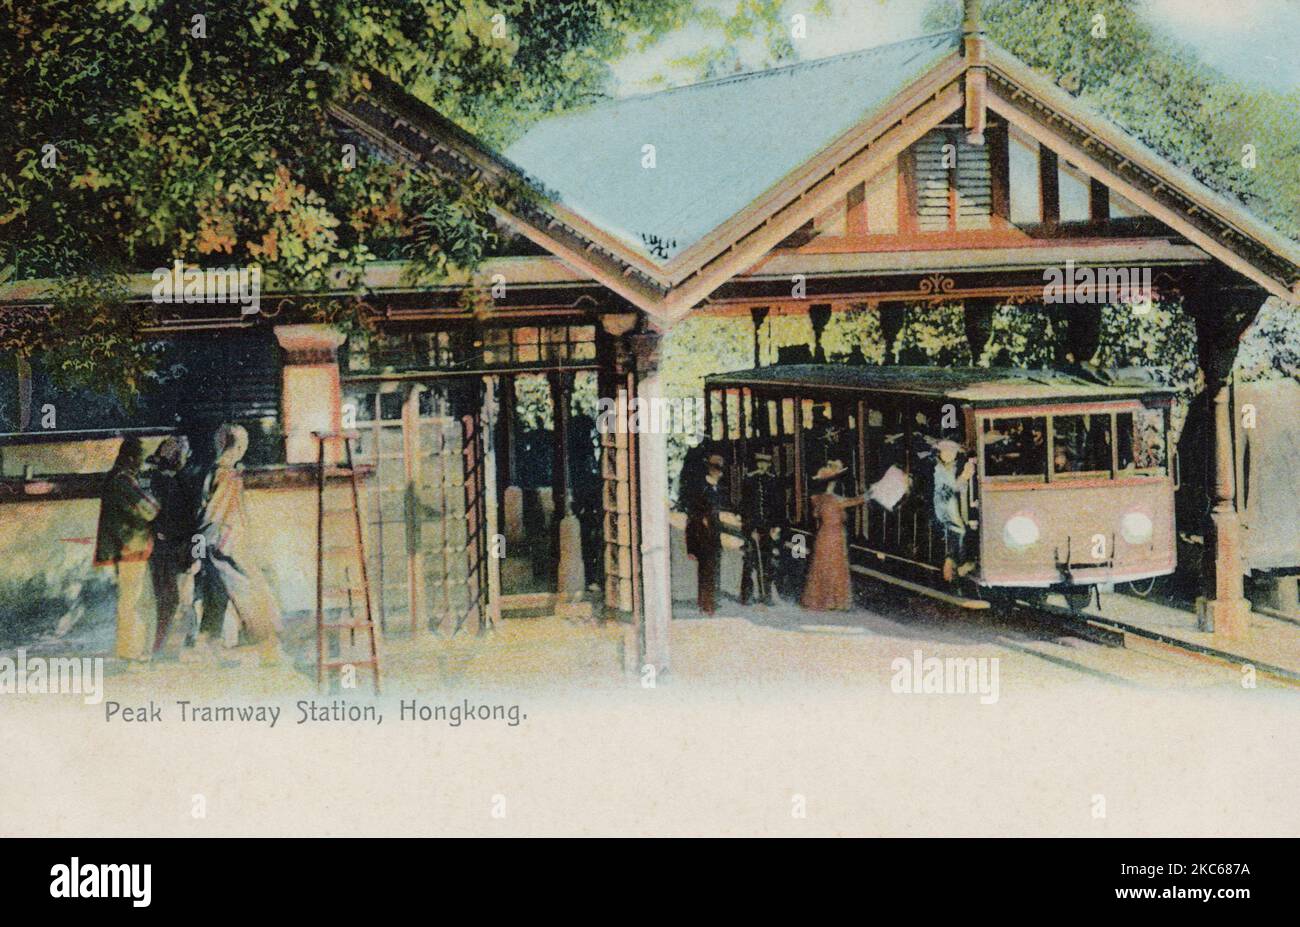 Peak Tramway Station, Hong Kong Cina, cartolina degli anni '10 circa. Fotografo non identificato Foto Stock